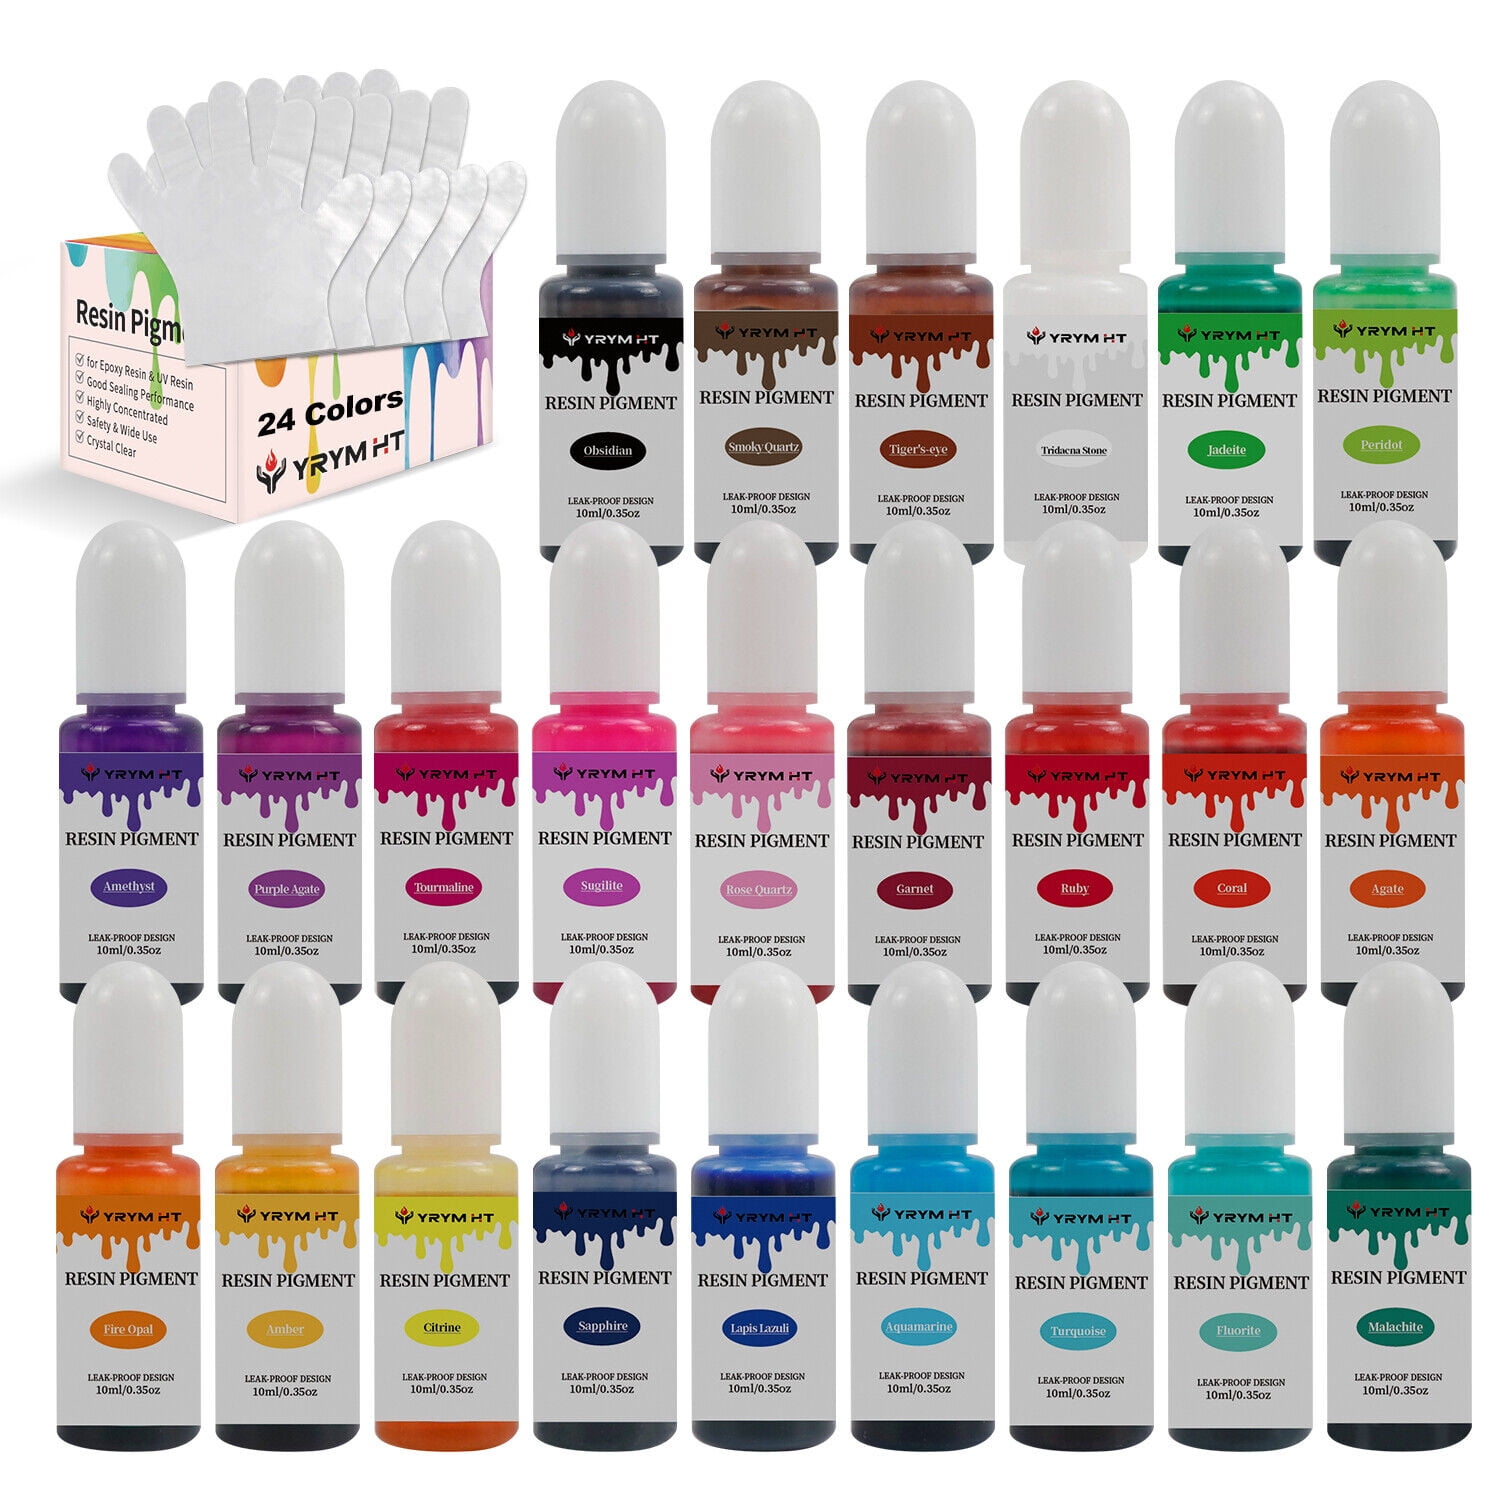 Resin Liquid Pigment - 18 Solid Colors - 0.33 oz/10 ml each – Rolio Pigments